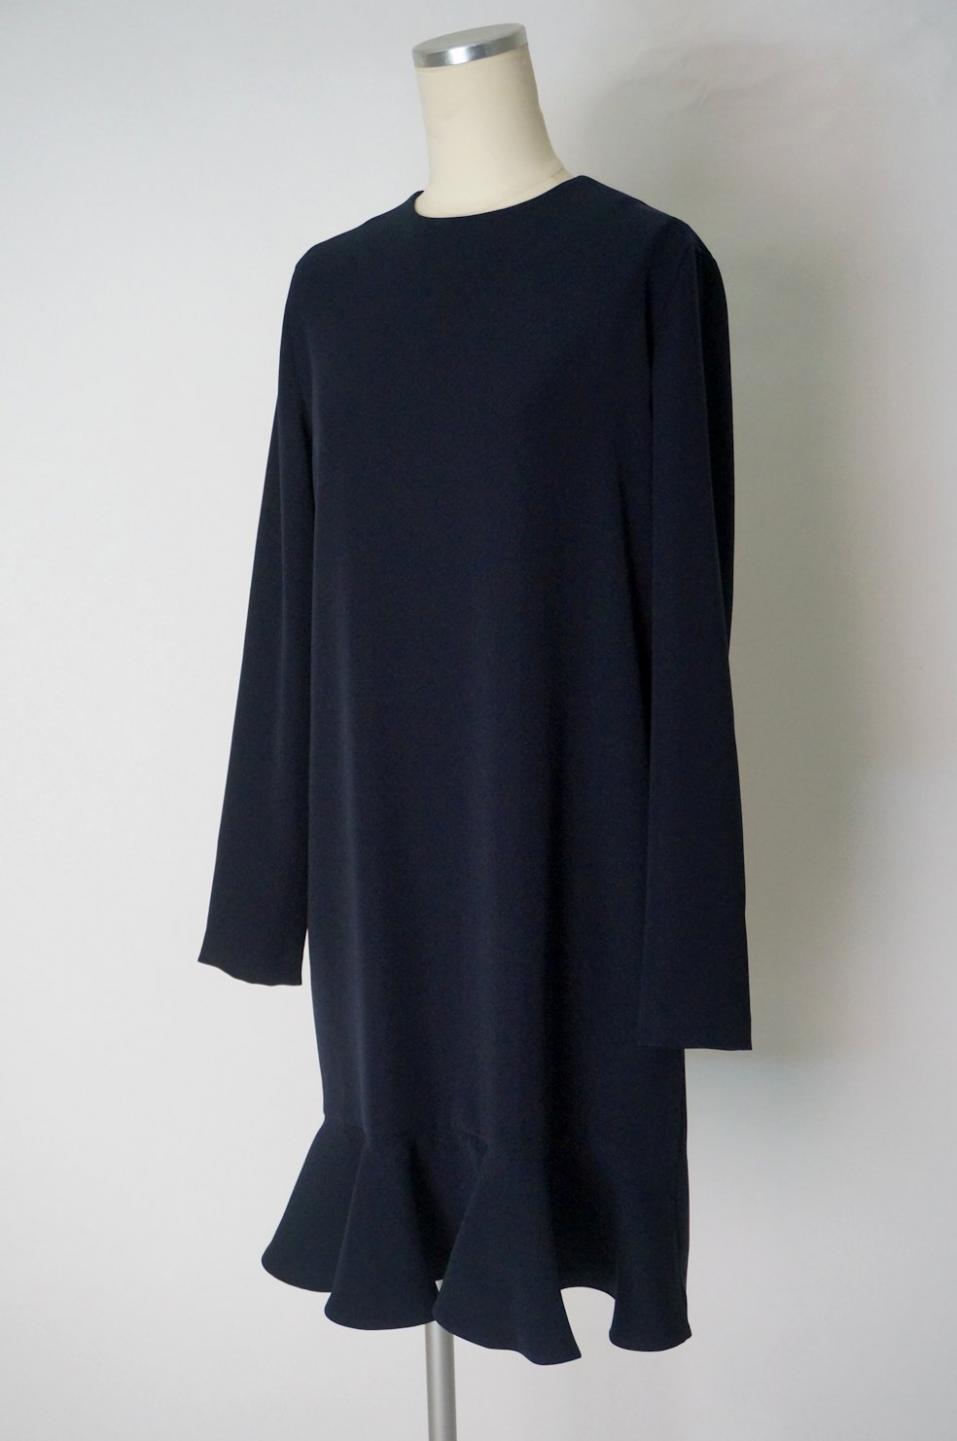 YOKO CHAN 裾フリルの長袖ワンピースドレス ネイビー38 / レンタルリトルブラックドレス テン Rental Little